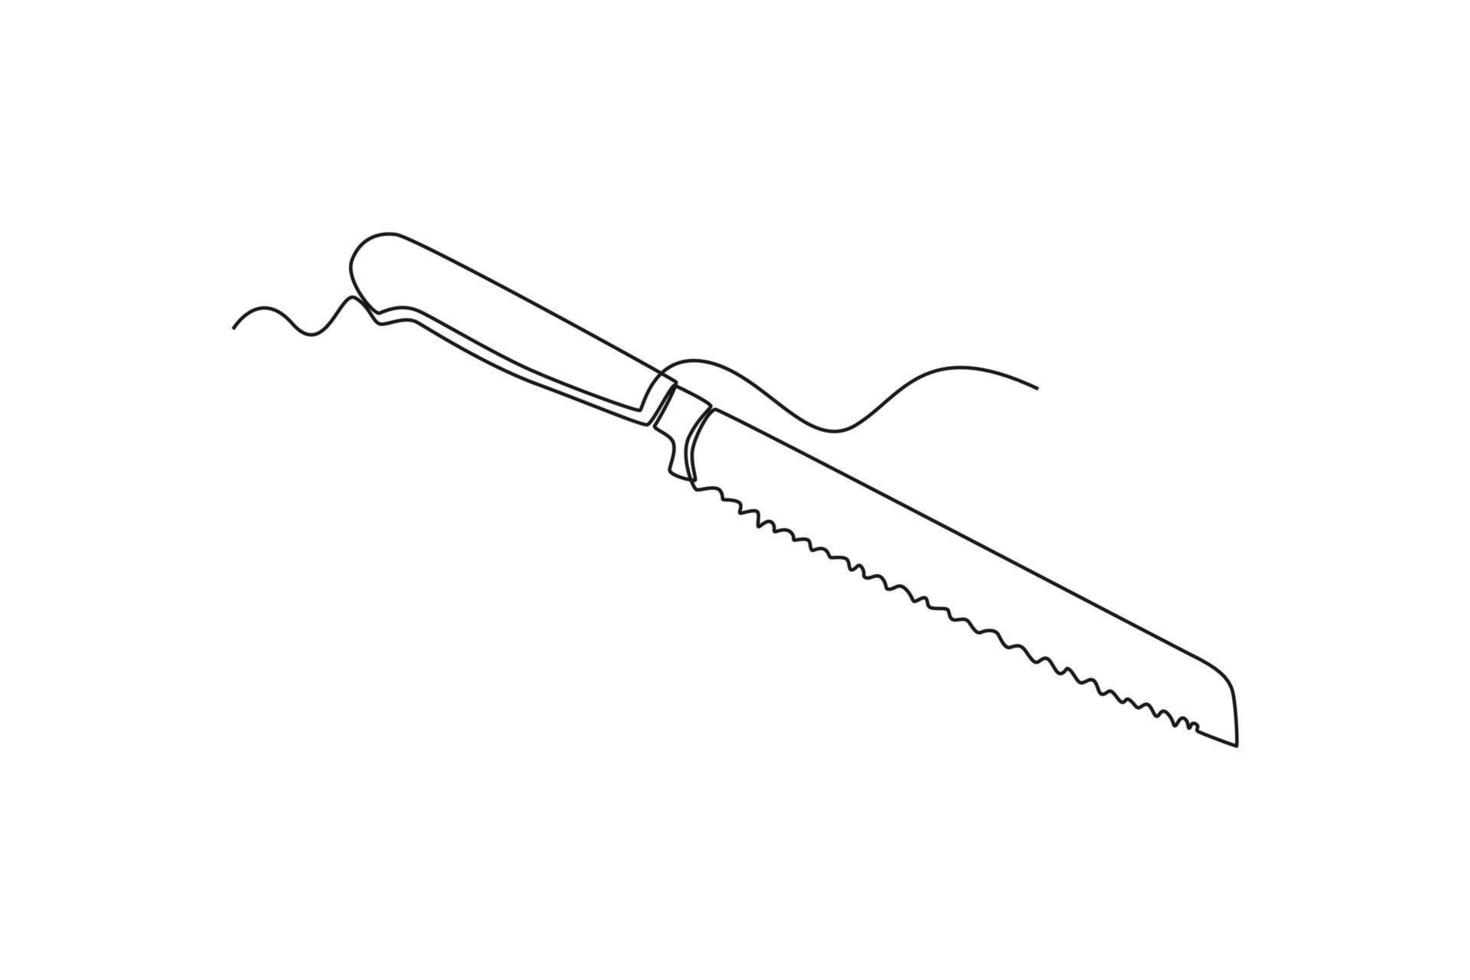 Single einer Linie Zeichnung Brot Messer. Geschirr Konzept. kontinuierlich Linie zeichnen Design Grafik Vektor Illustration.